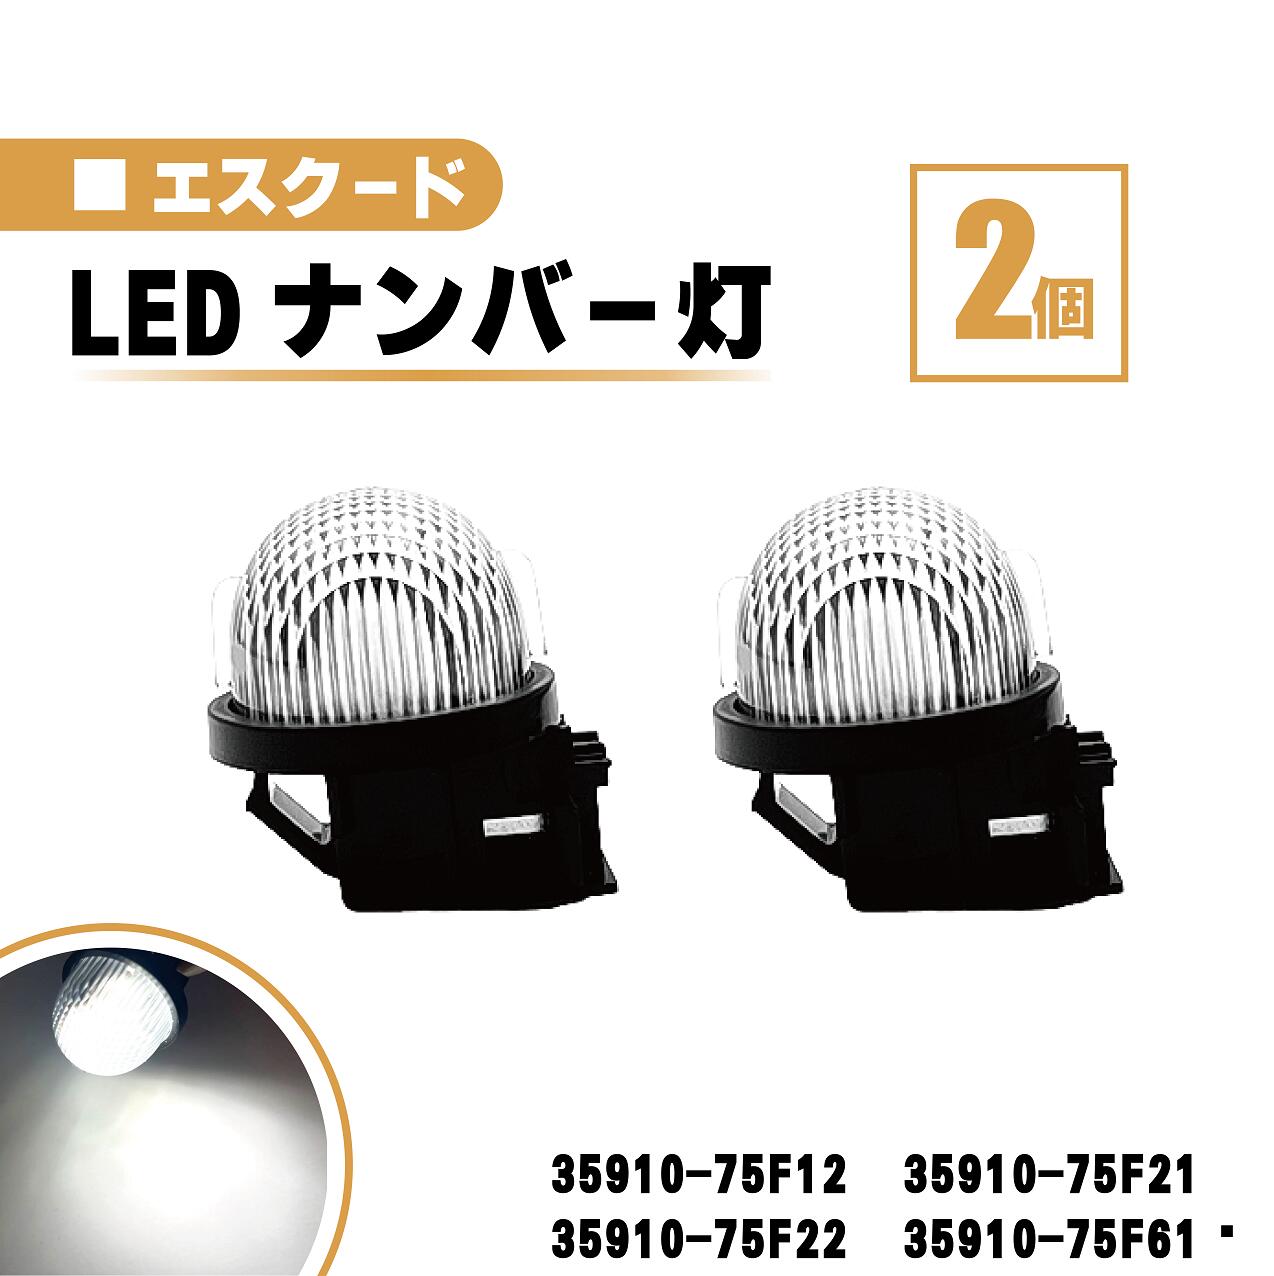 スズキ エスクード LED ナンバー 灯 2個 セット レンズ 一体型 リア ライセンスプレート ランプ ライト 白 TA02 TD02 TD32 TA52 TD52 TL52 35910-75F12 35910-75F21 35910-75F22 35910-75F61